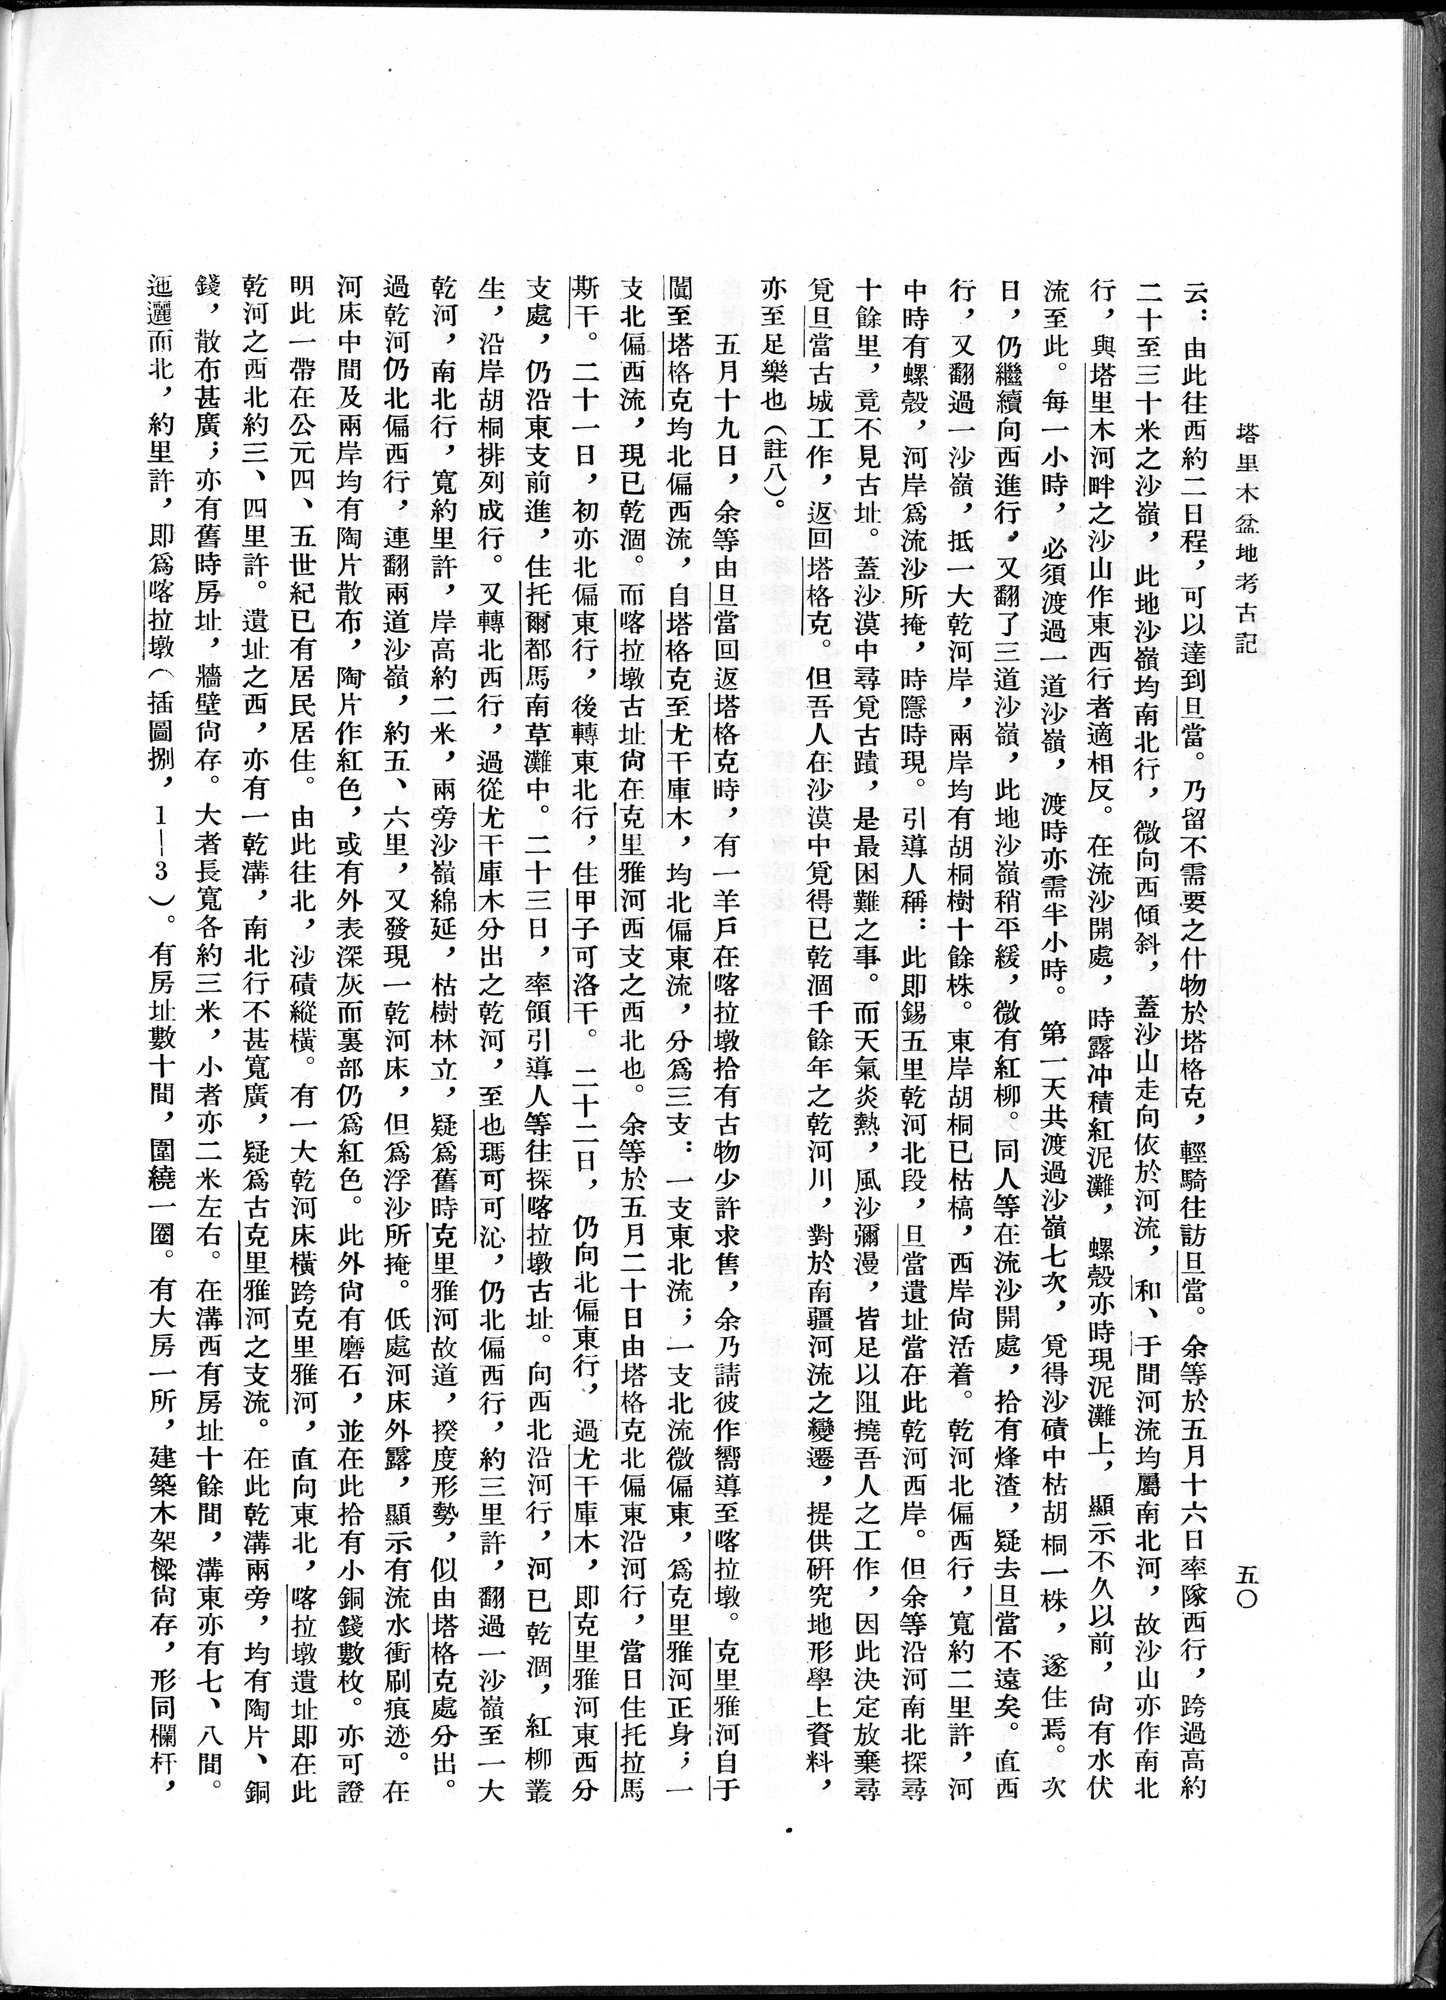 塔里木盆地考古記 : vol.1 / Page 74 (Grayscale High Resolution Image)